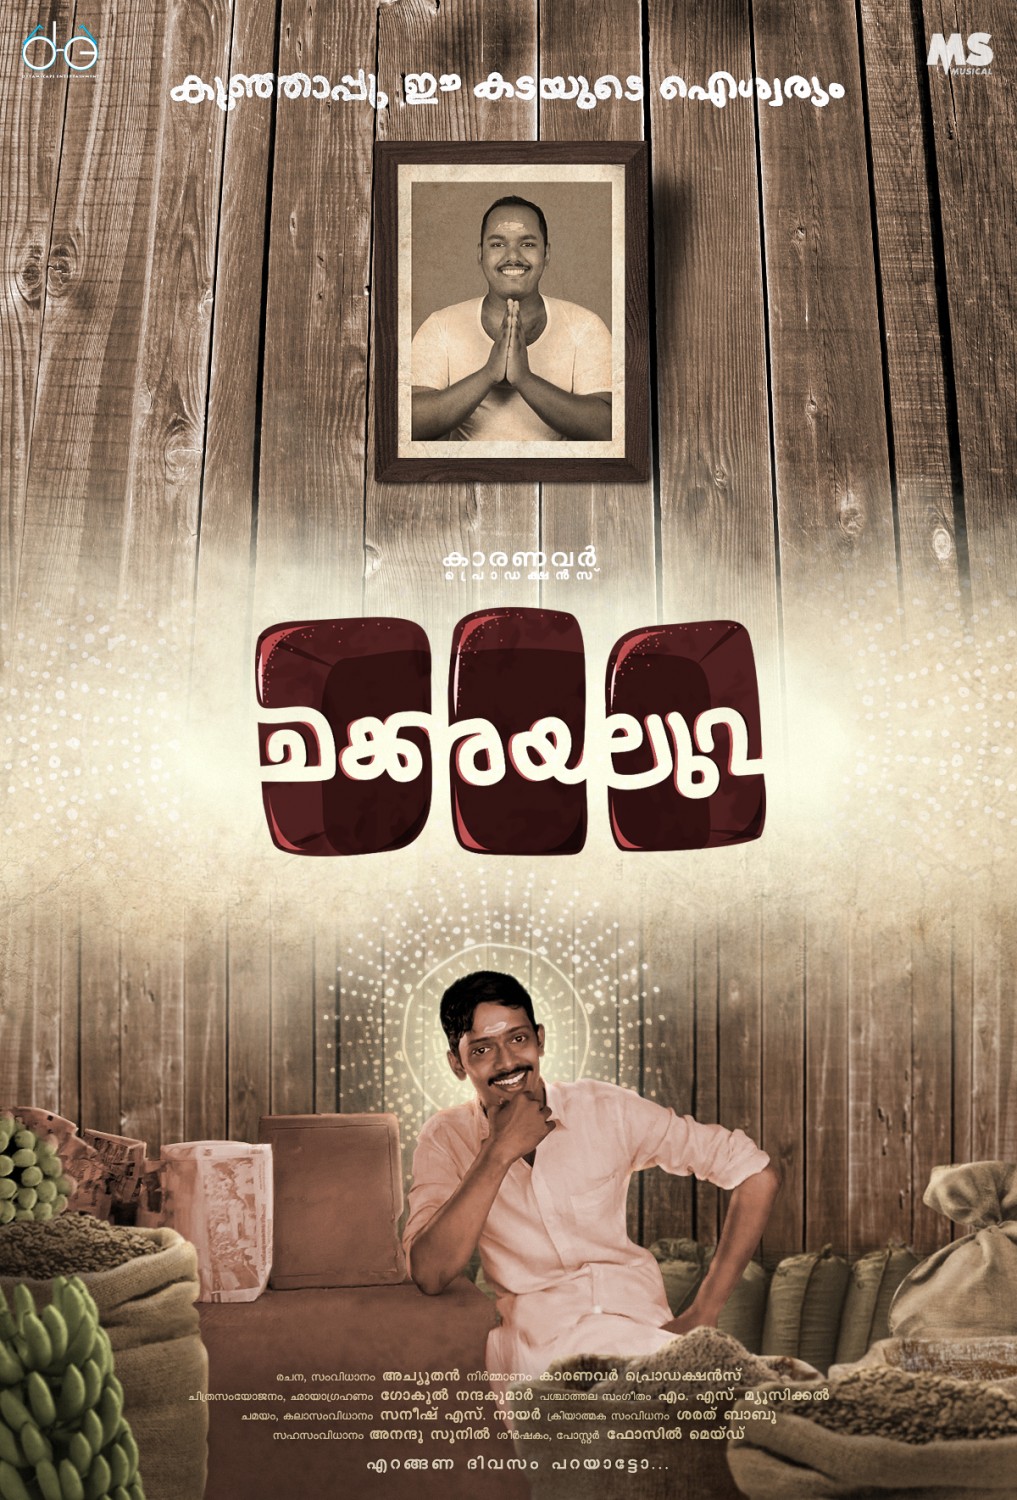 Extra Large Movie Poster Image for Chakkarayaluva